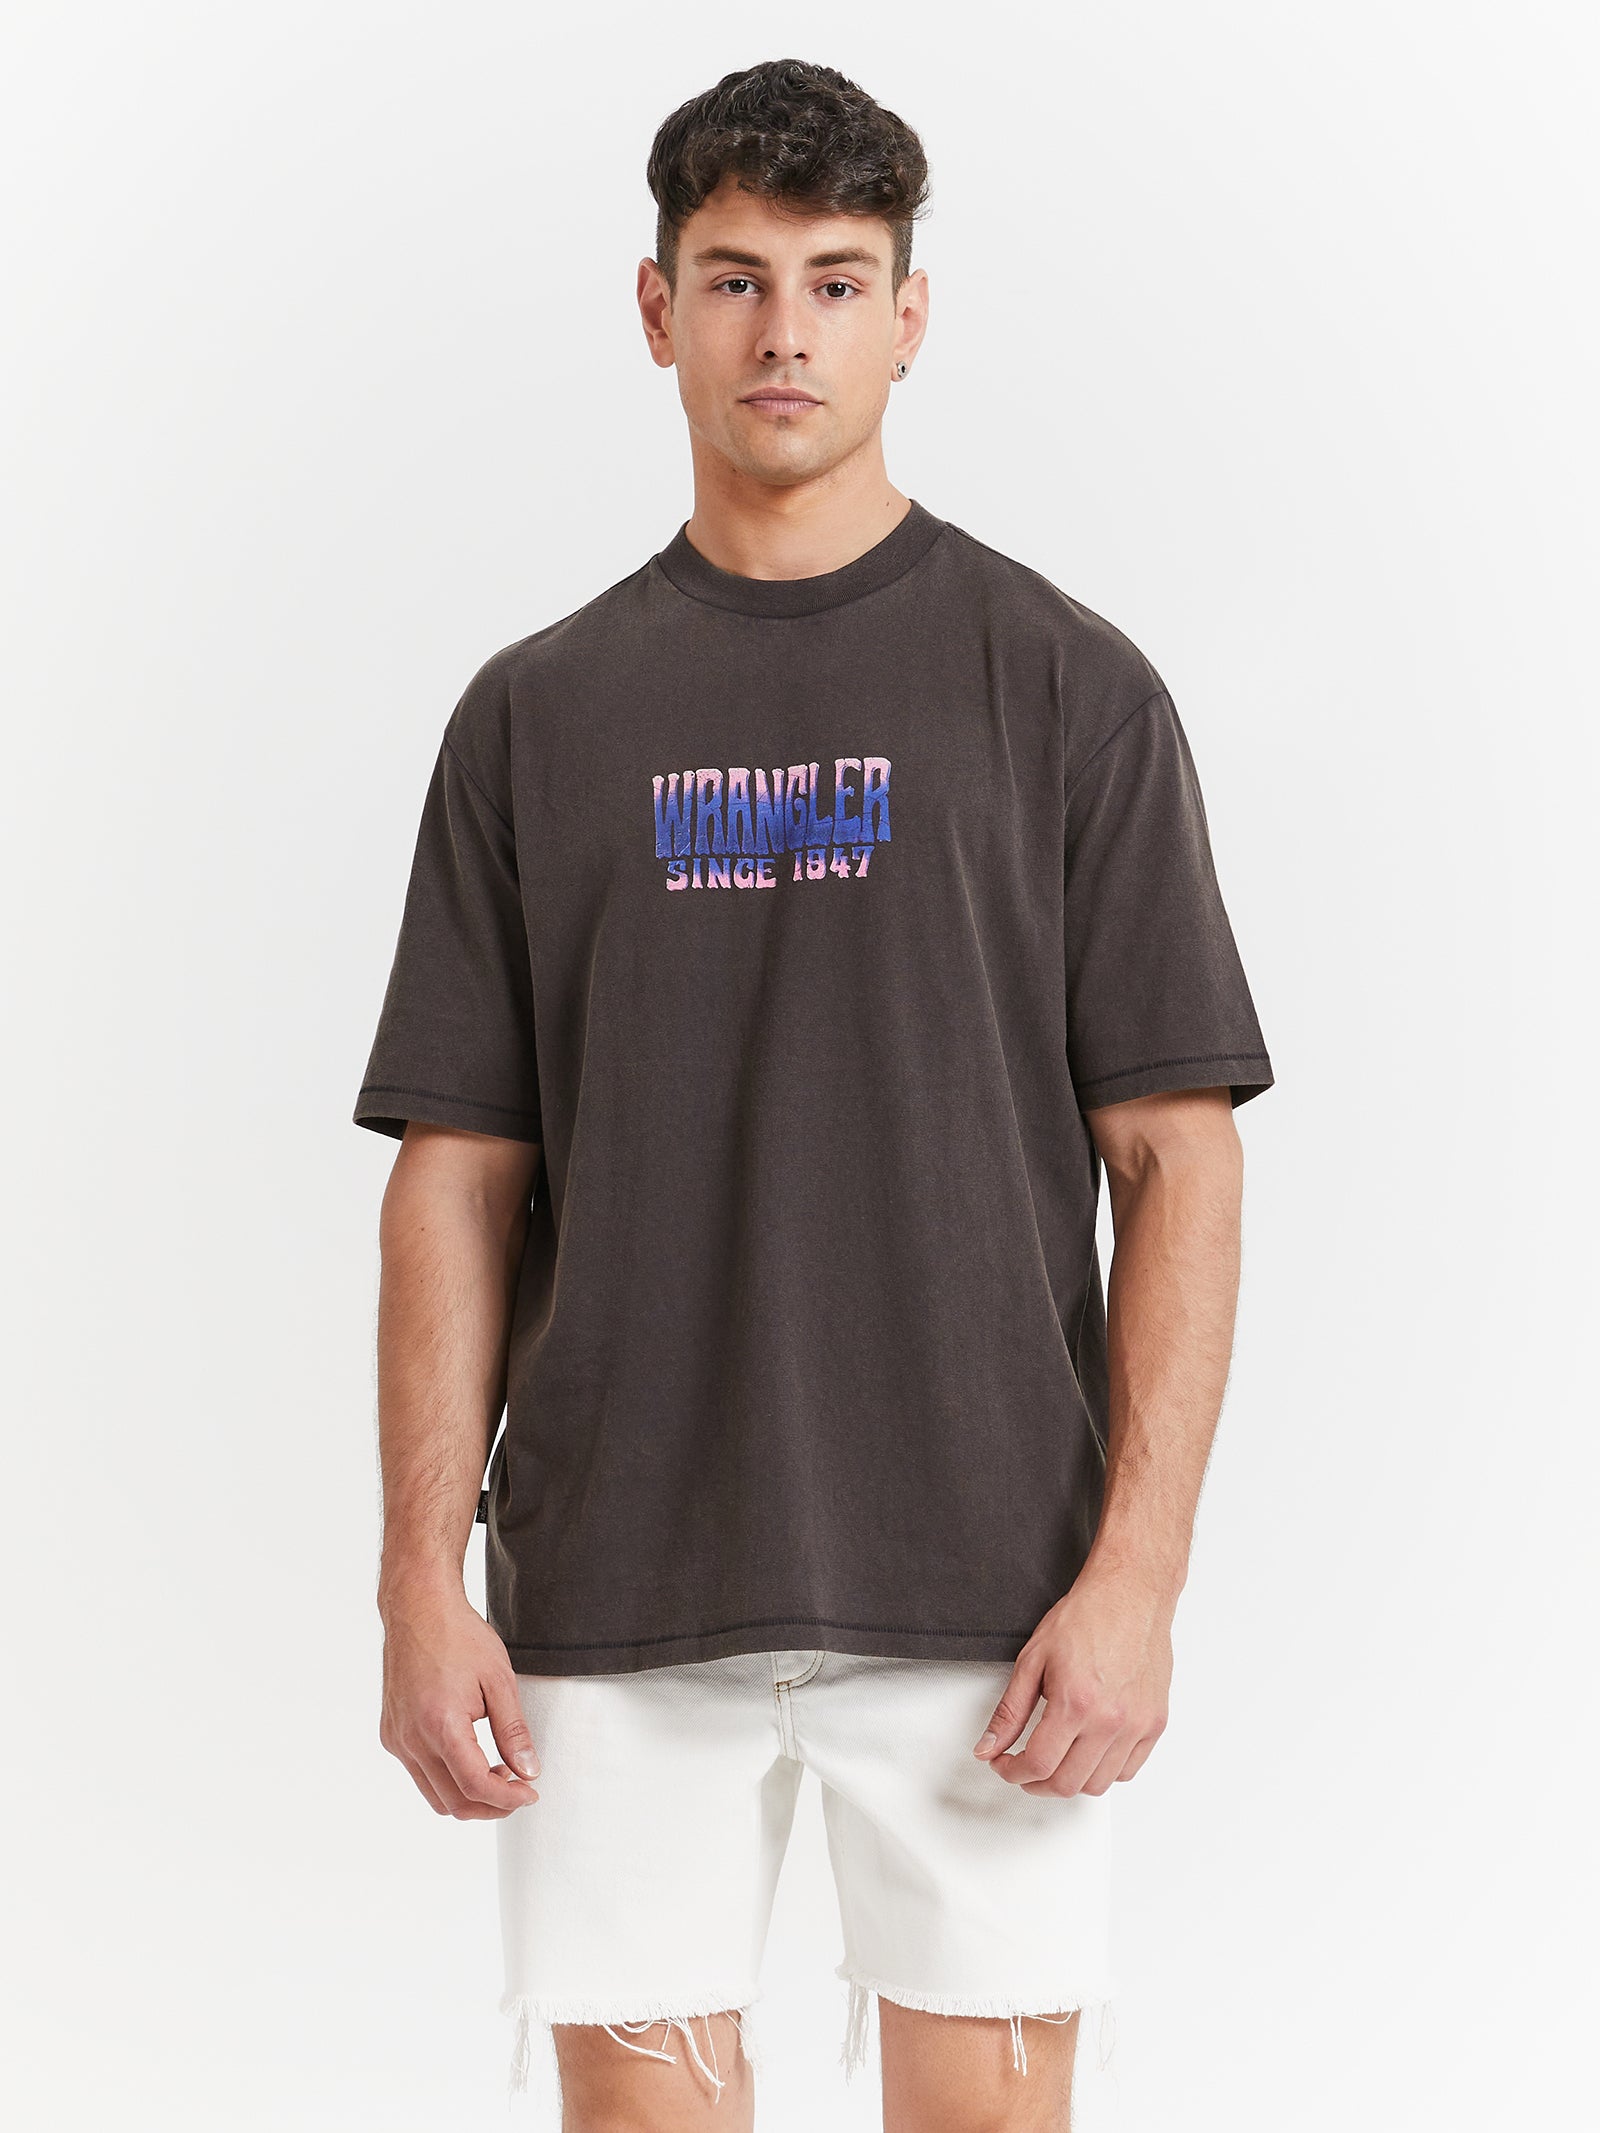 Slacker Glue Worn Store Black in Mind Mirage T-Shirt -